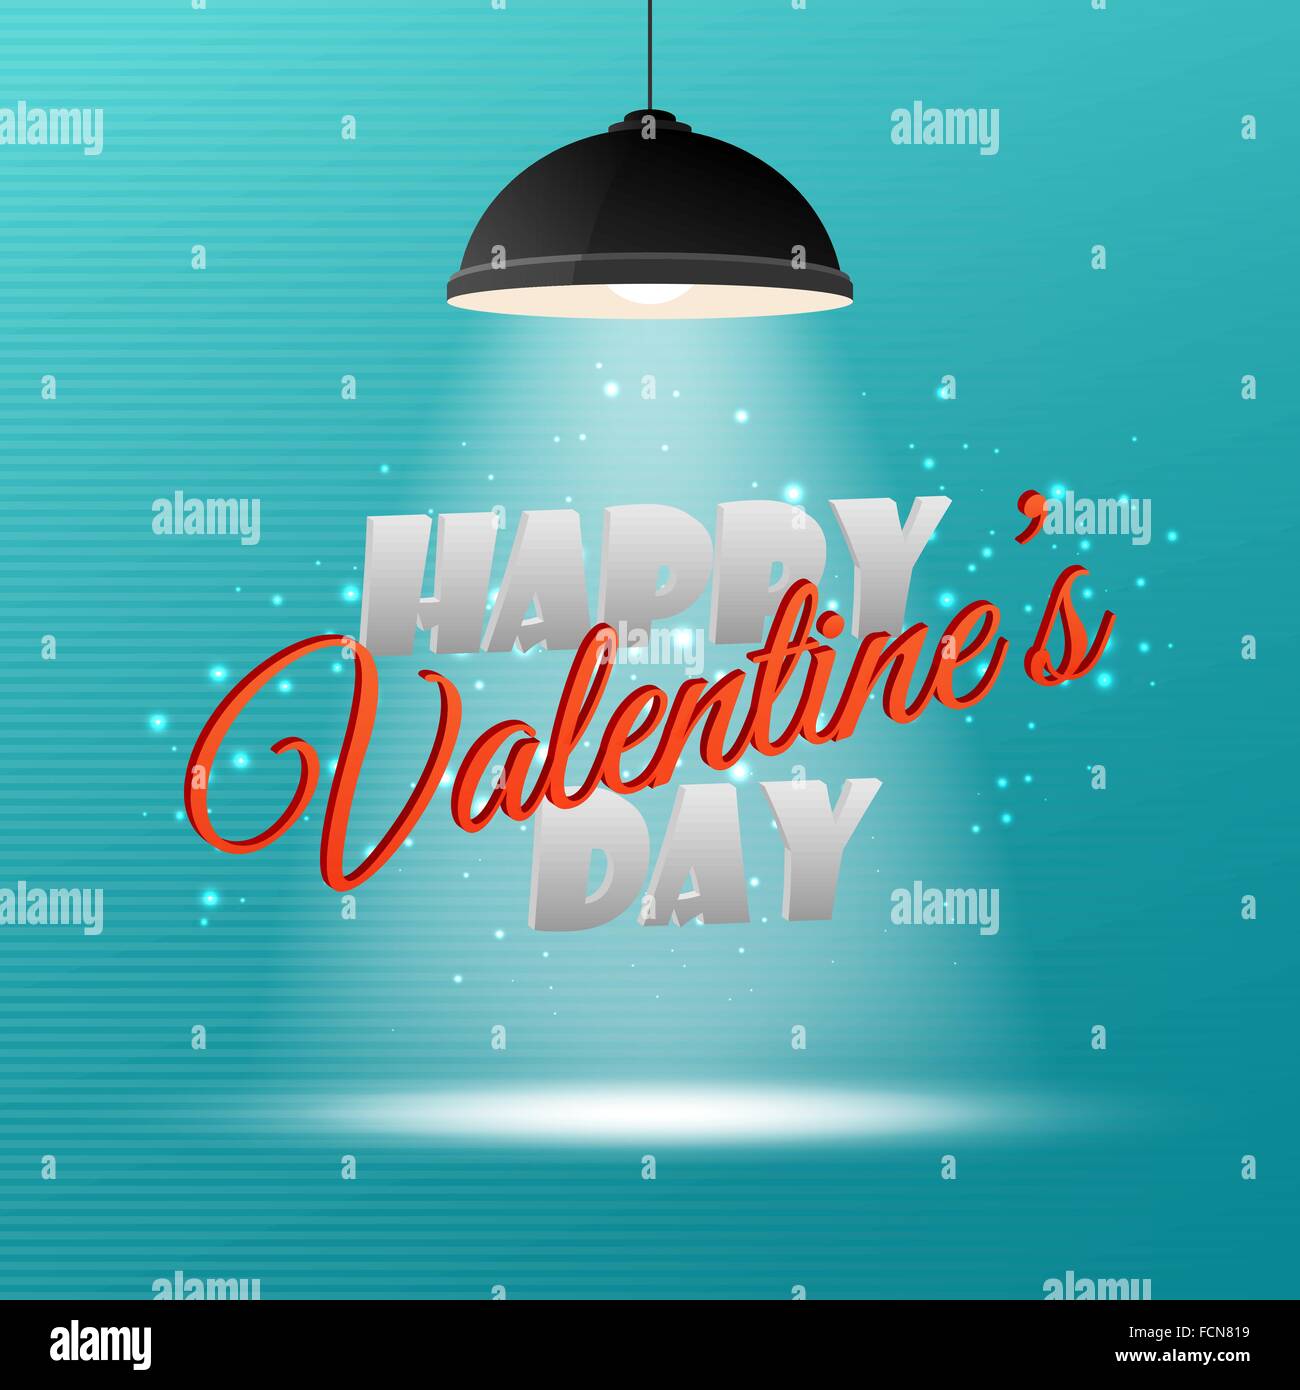 Happy Valentine's Day 3d inscription sur fond clair pour votre invitation ou conception de cartes de souhaits Illustration de Vecteur